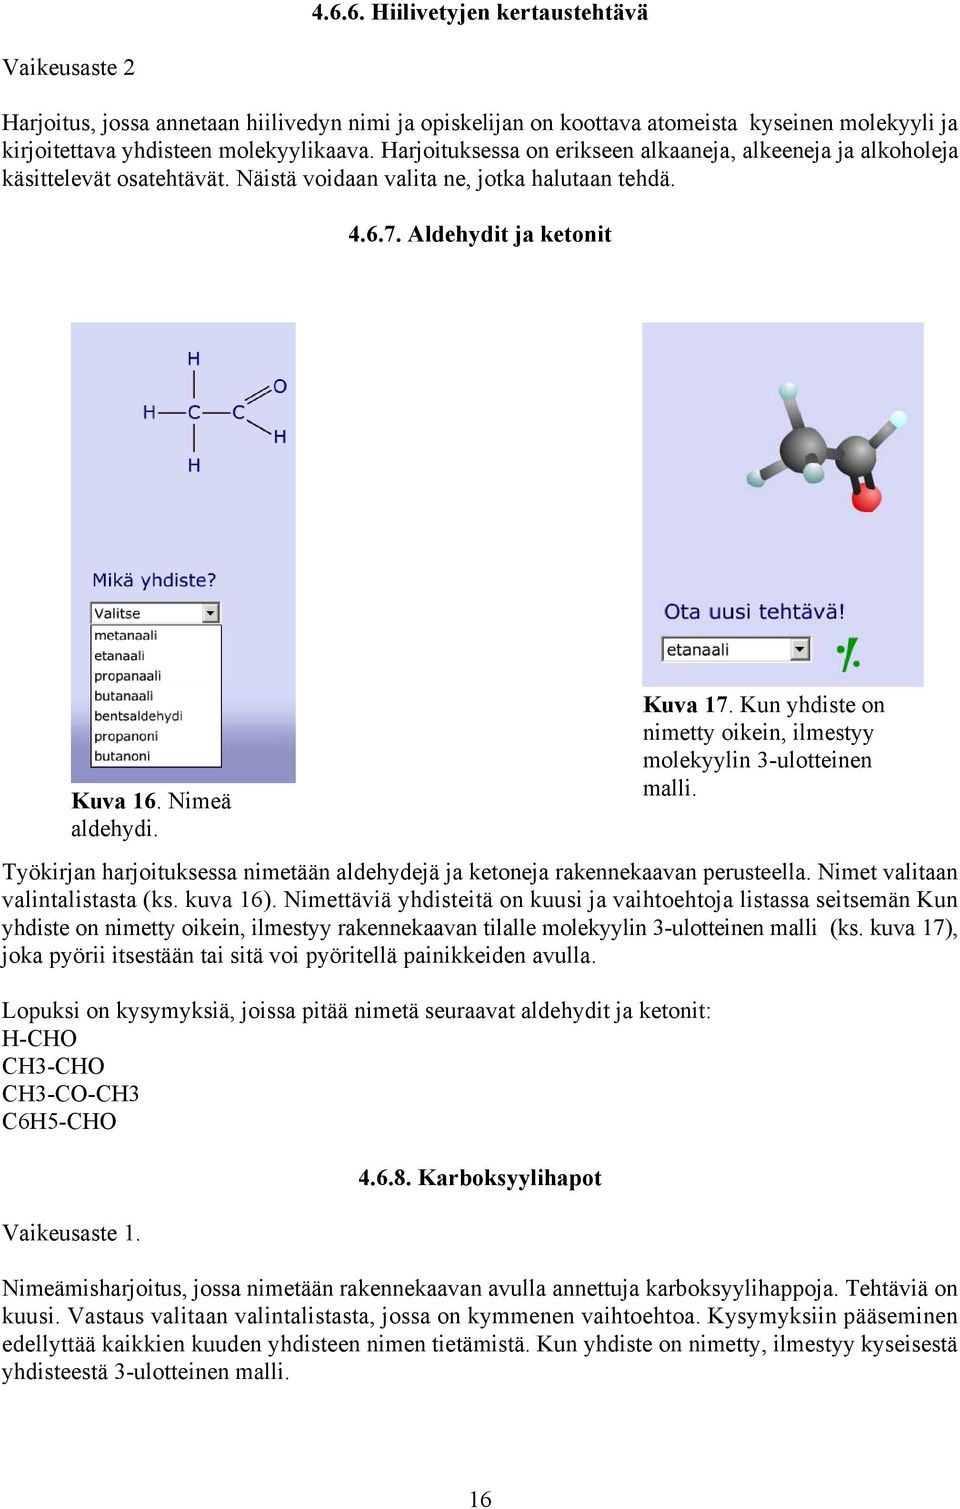 Kun yhdiste on nimetty oikein, ilmestyy molekyylin 3-ulotteinen malli. Työkirjan harjoituksessa nimetään aldehydejä ja ketoneja rakennekaavan perusteella. Nimet valitaan valintalistasta (ks. kuva 16).